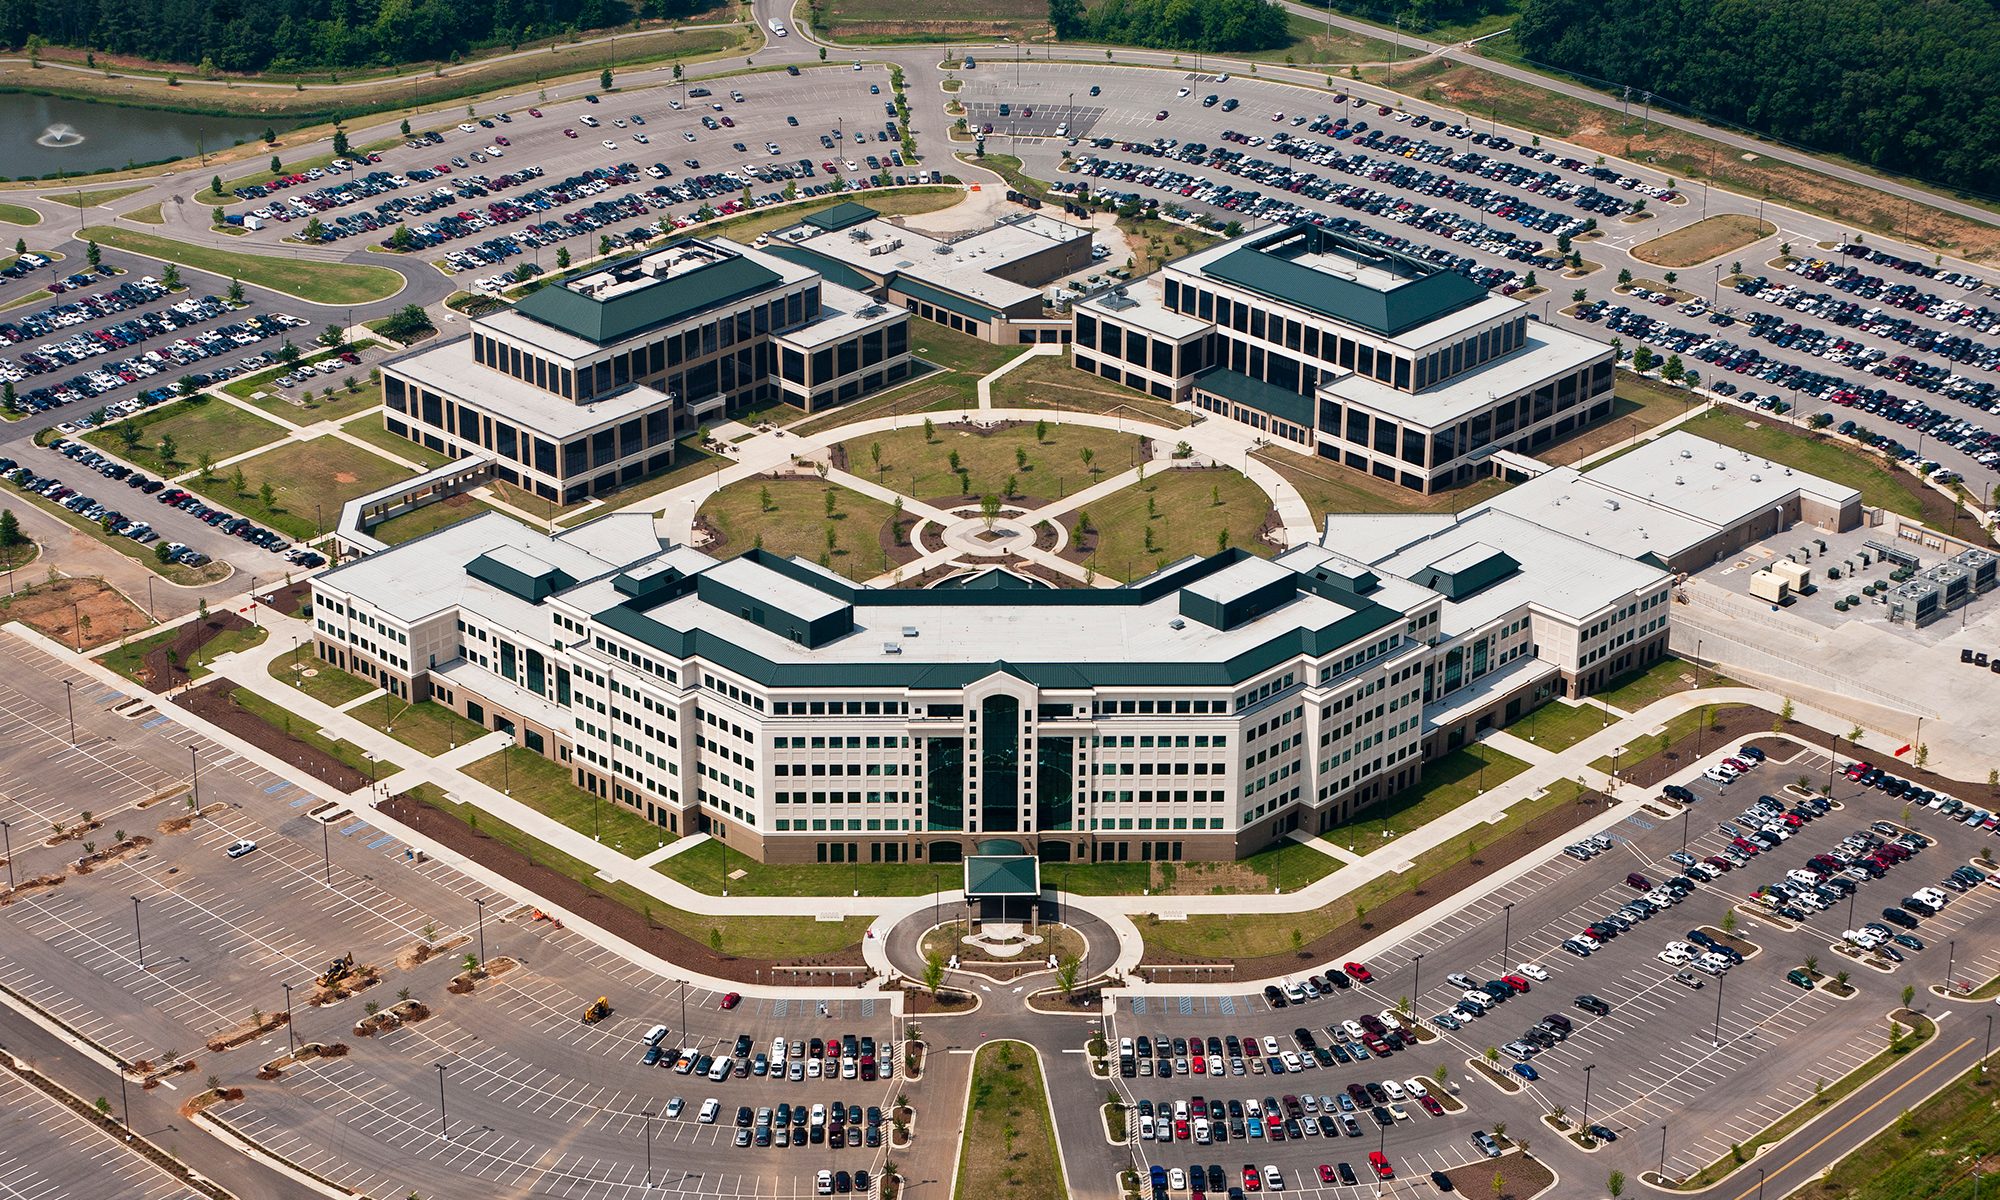 Aerial view of Von Braun Complex